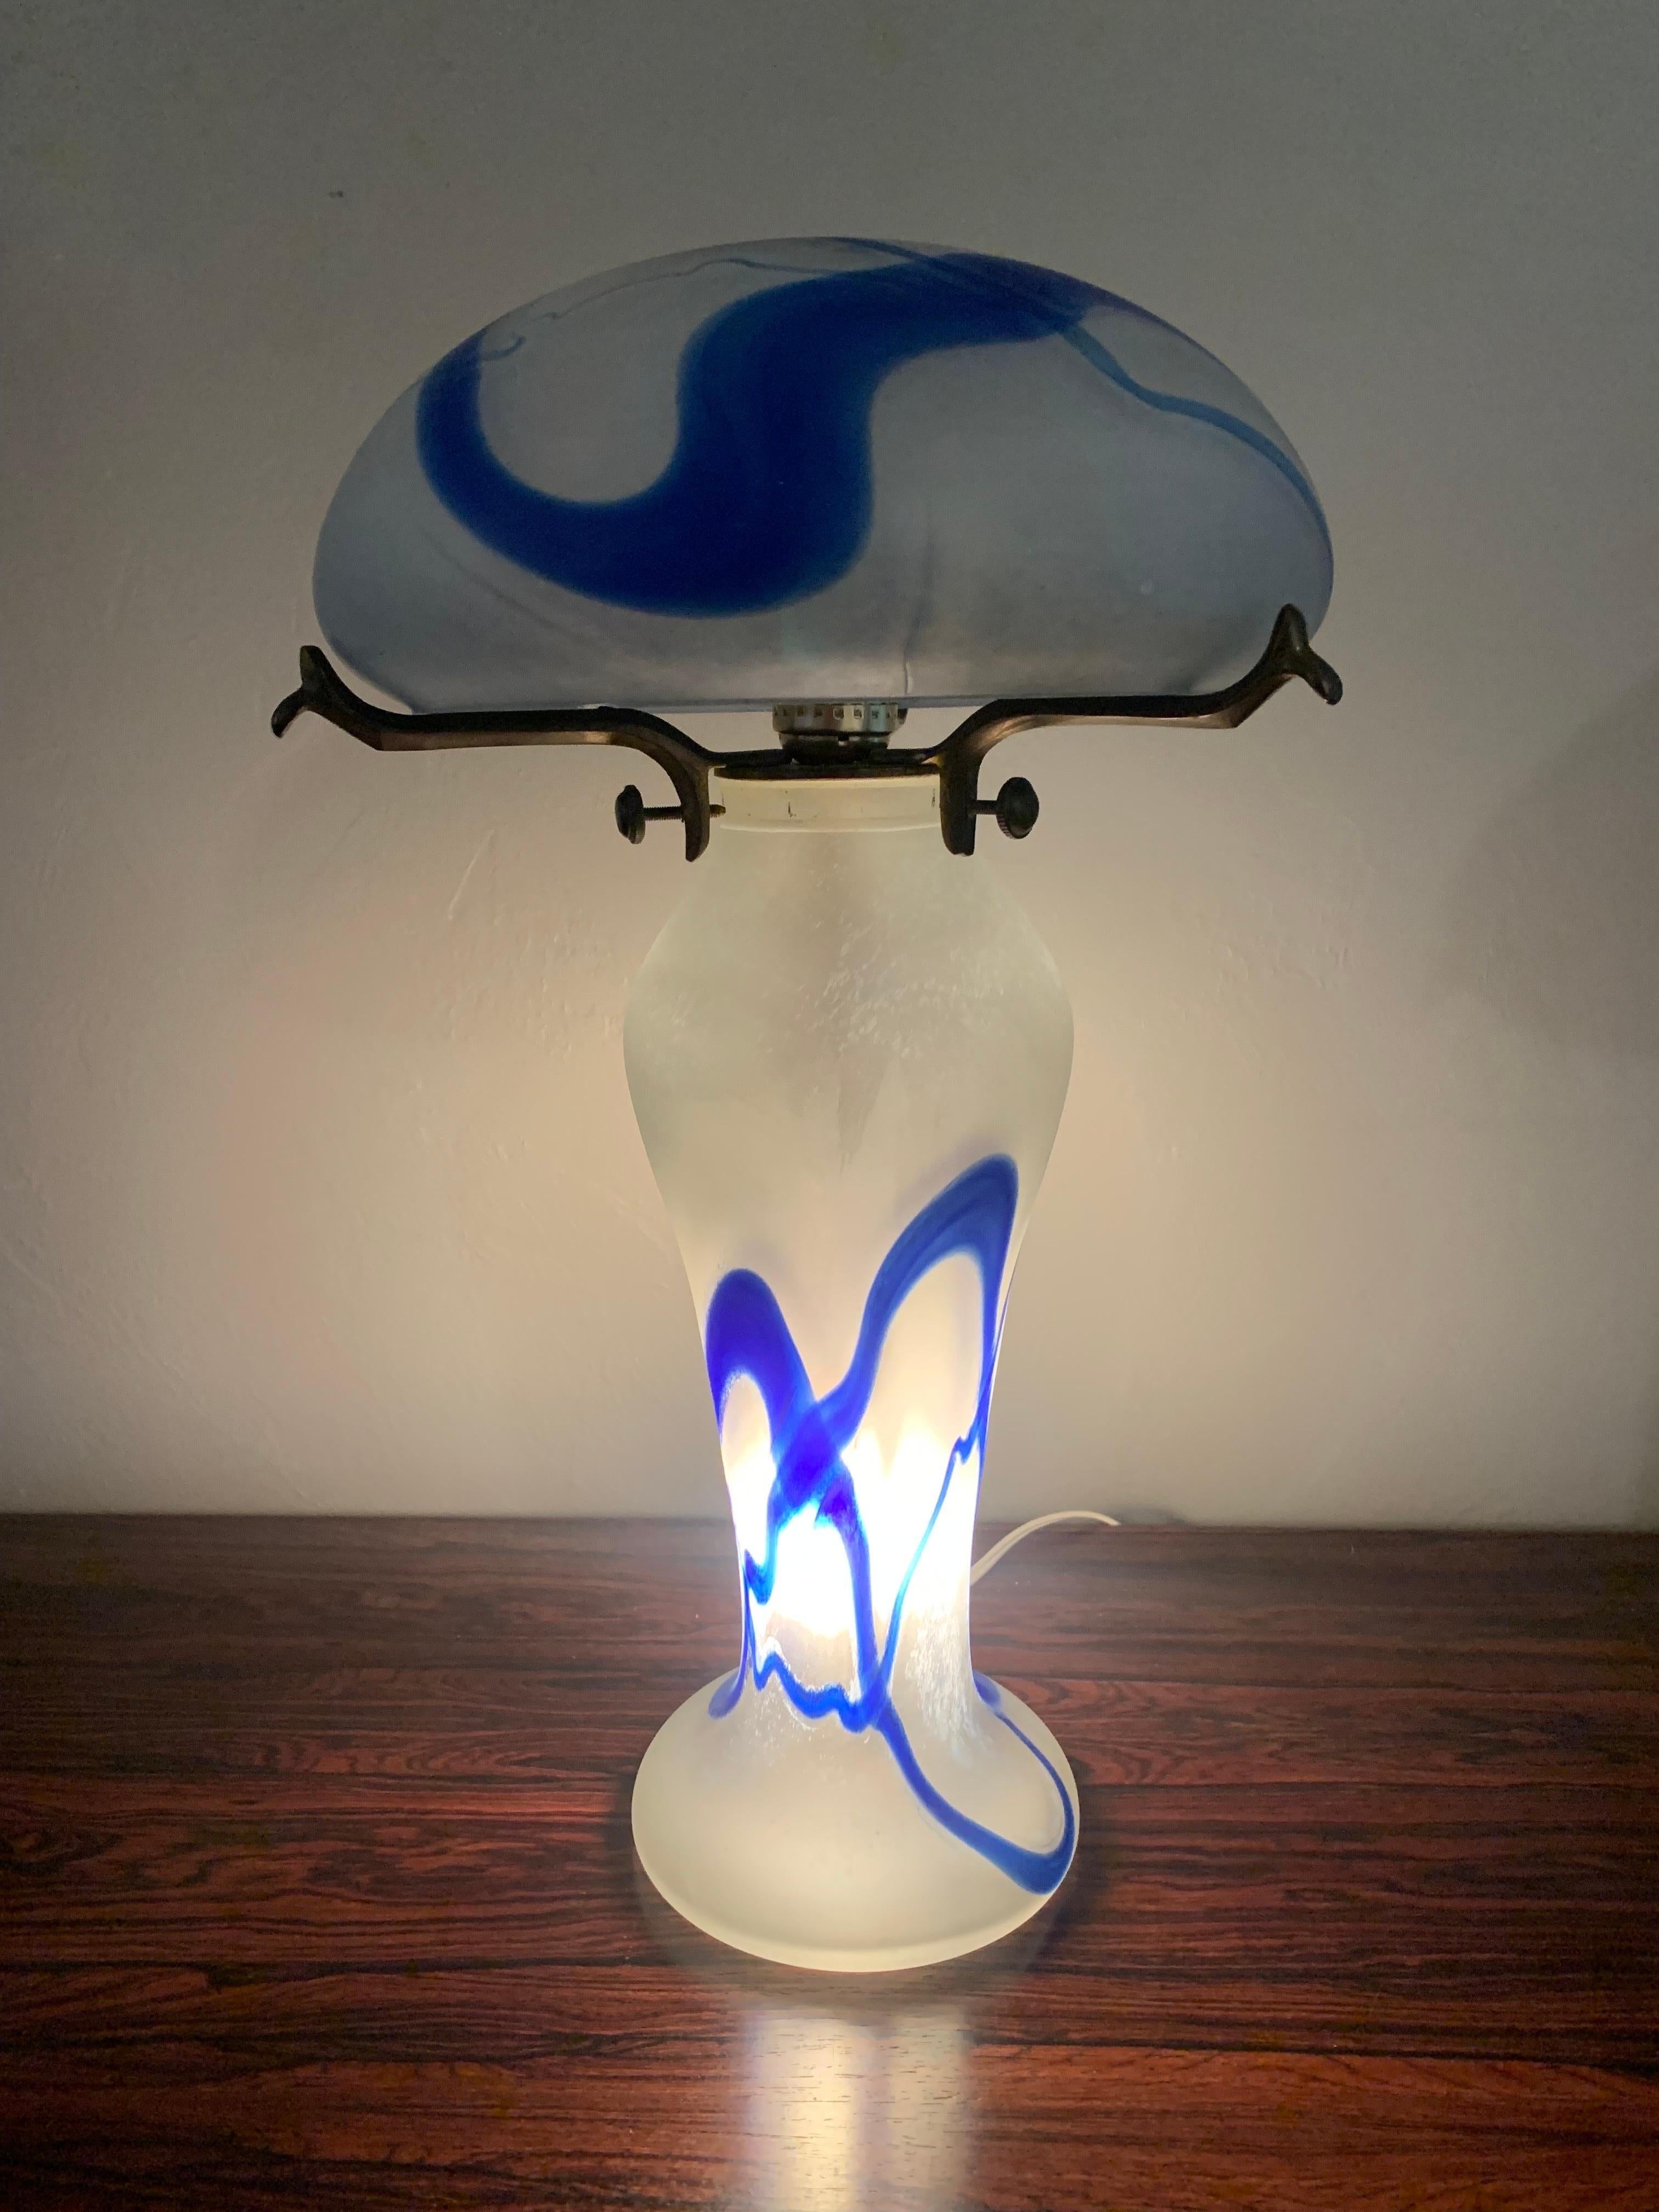 Exquisite Jugendstillampe, hergestellt in Frankreich. 

Traditionelle Pilzform mit abgerundeter Kuppel. Der Glassockel und die beiden Teile sind mit einem Messingstiel verbunden, der am Sockel befestigt ist. 

Blaues, weißes und klares Glas. 

CIRCA